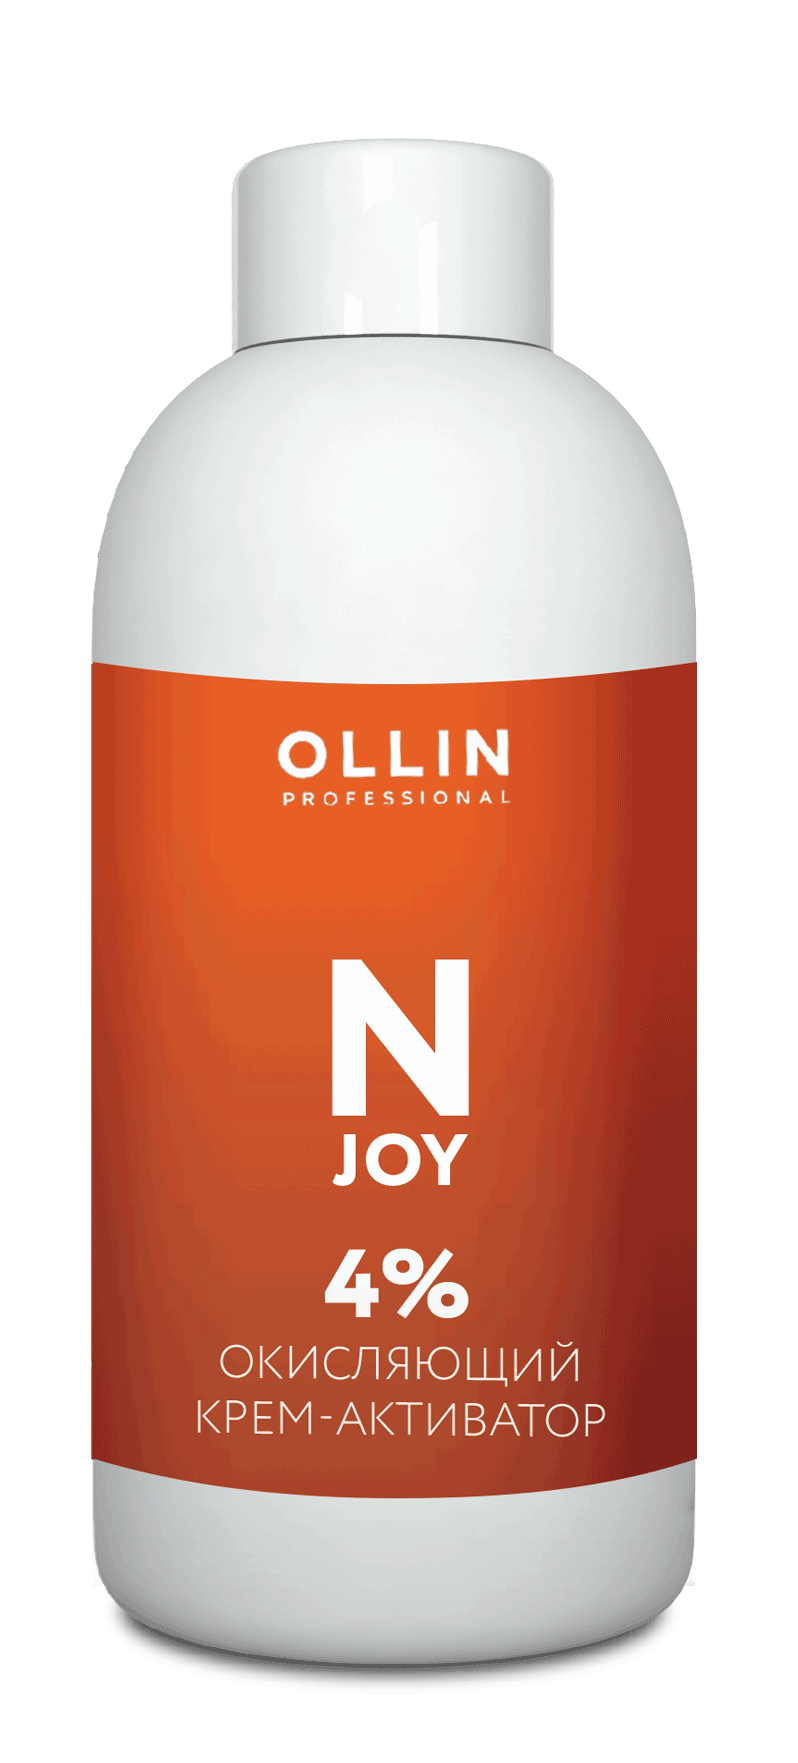 OLLIN N-JOY Окисляющий крем-активатор, 4%  100мл